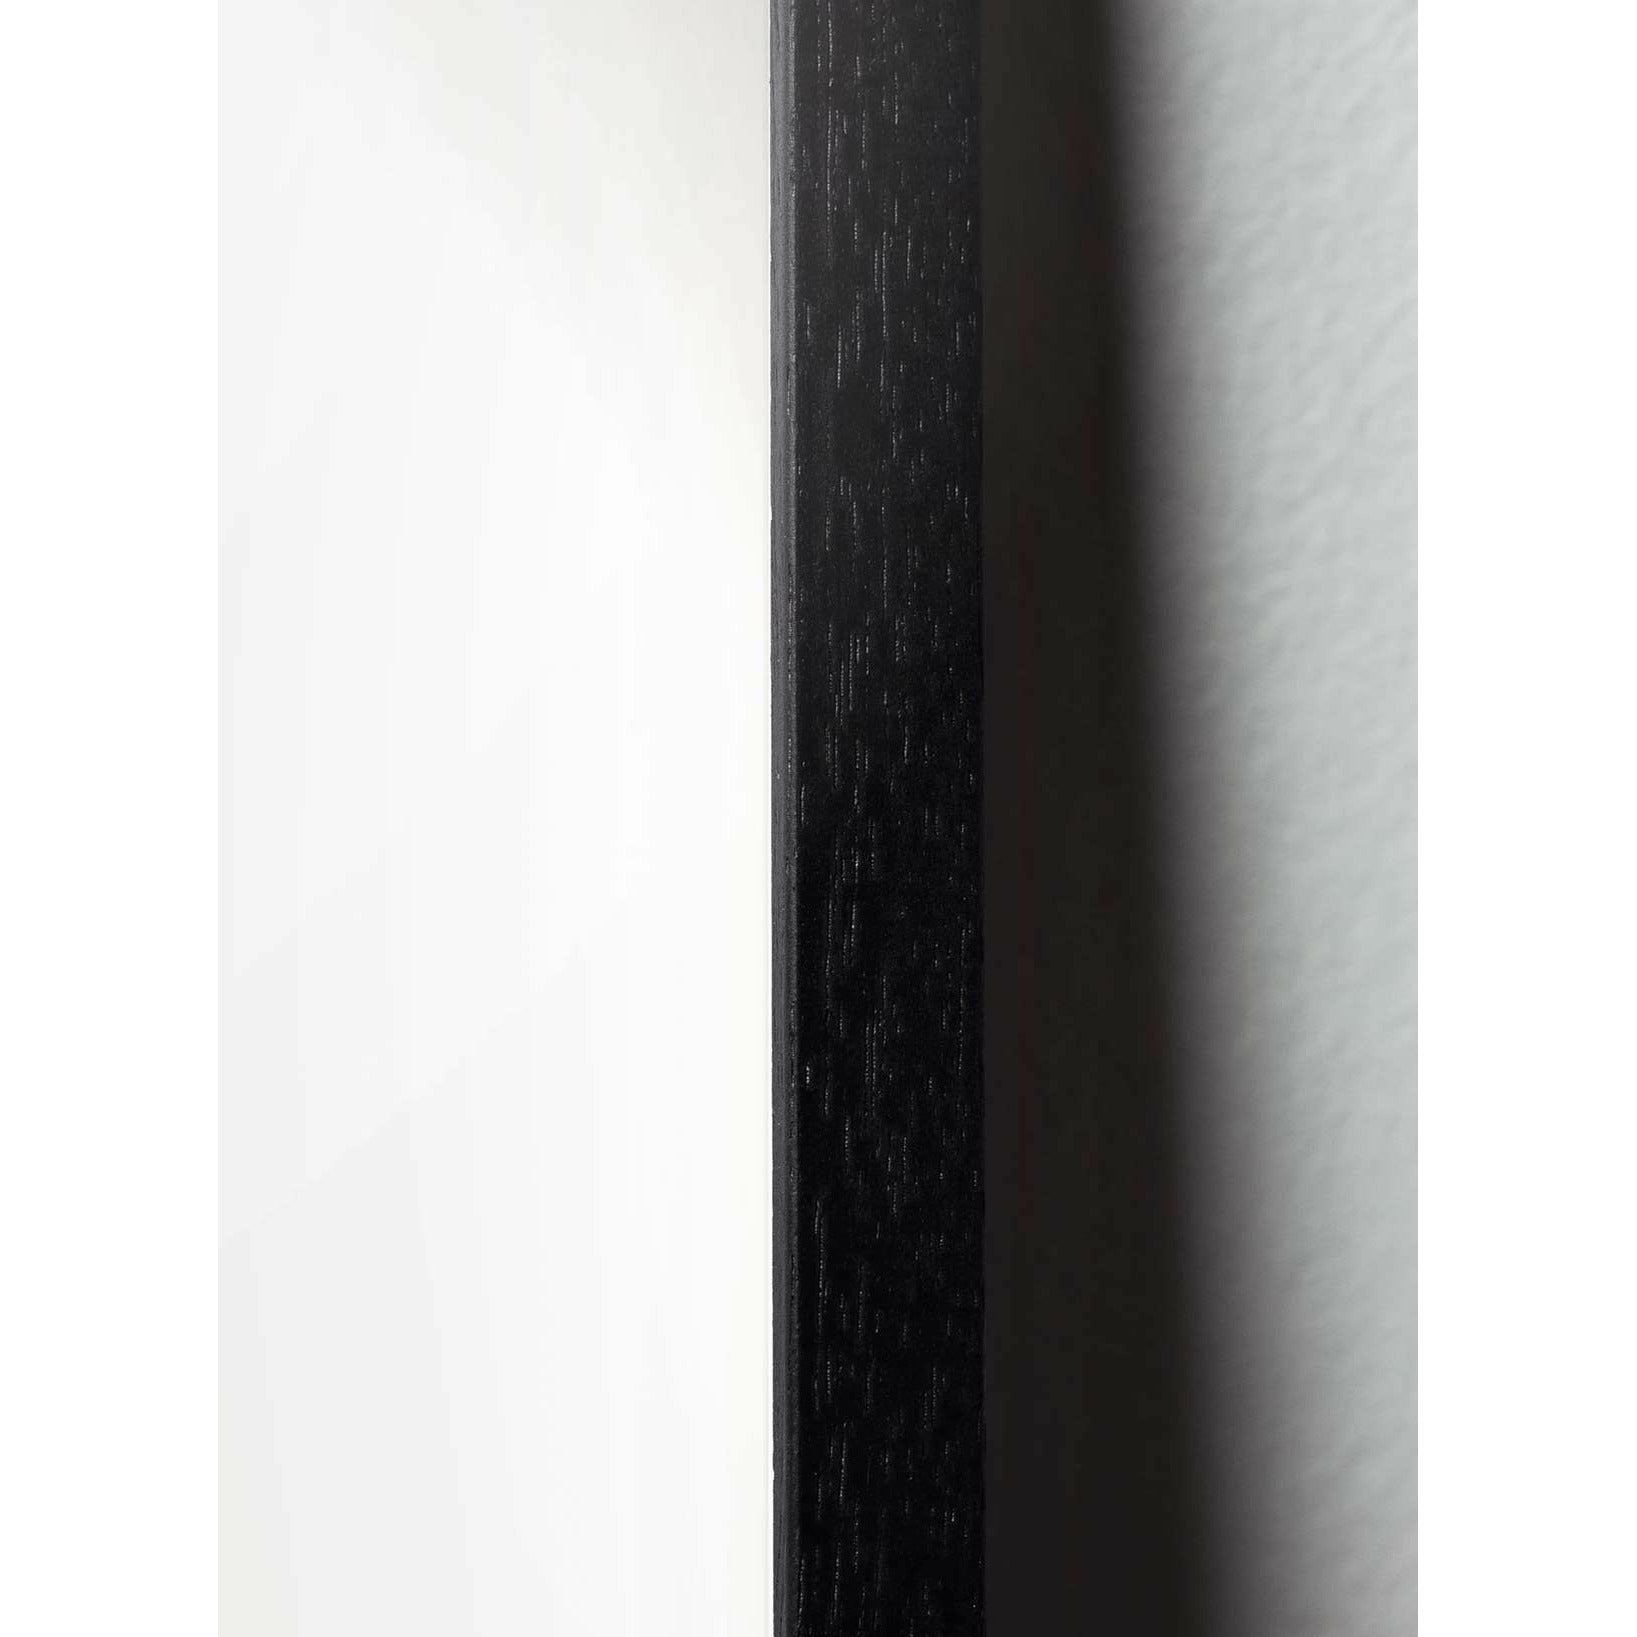 Brainchild Teddy Bear Line -plakat, ramme i svart lakkert tre 70x100 cm, hvit bakgrunn